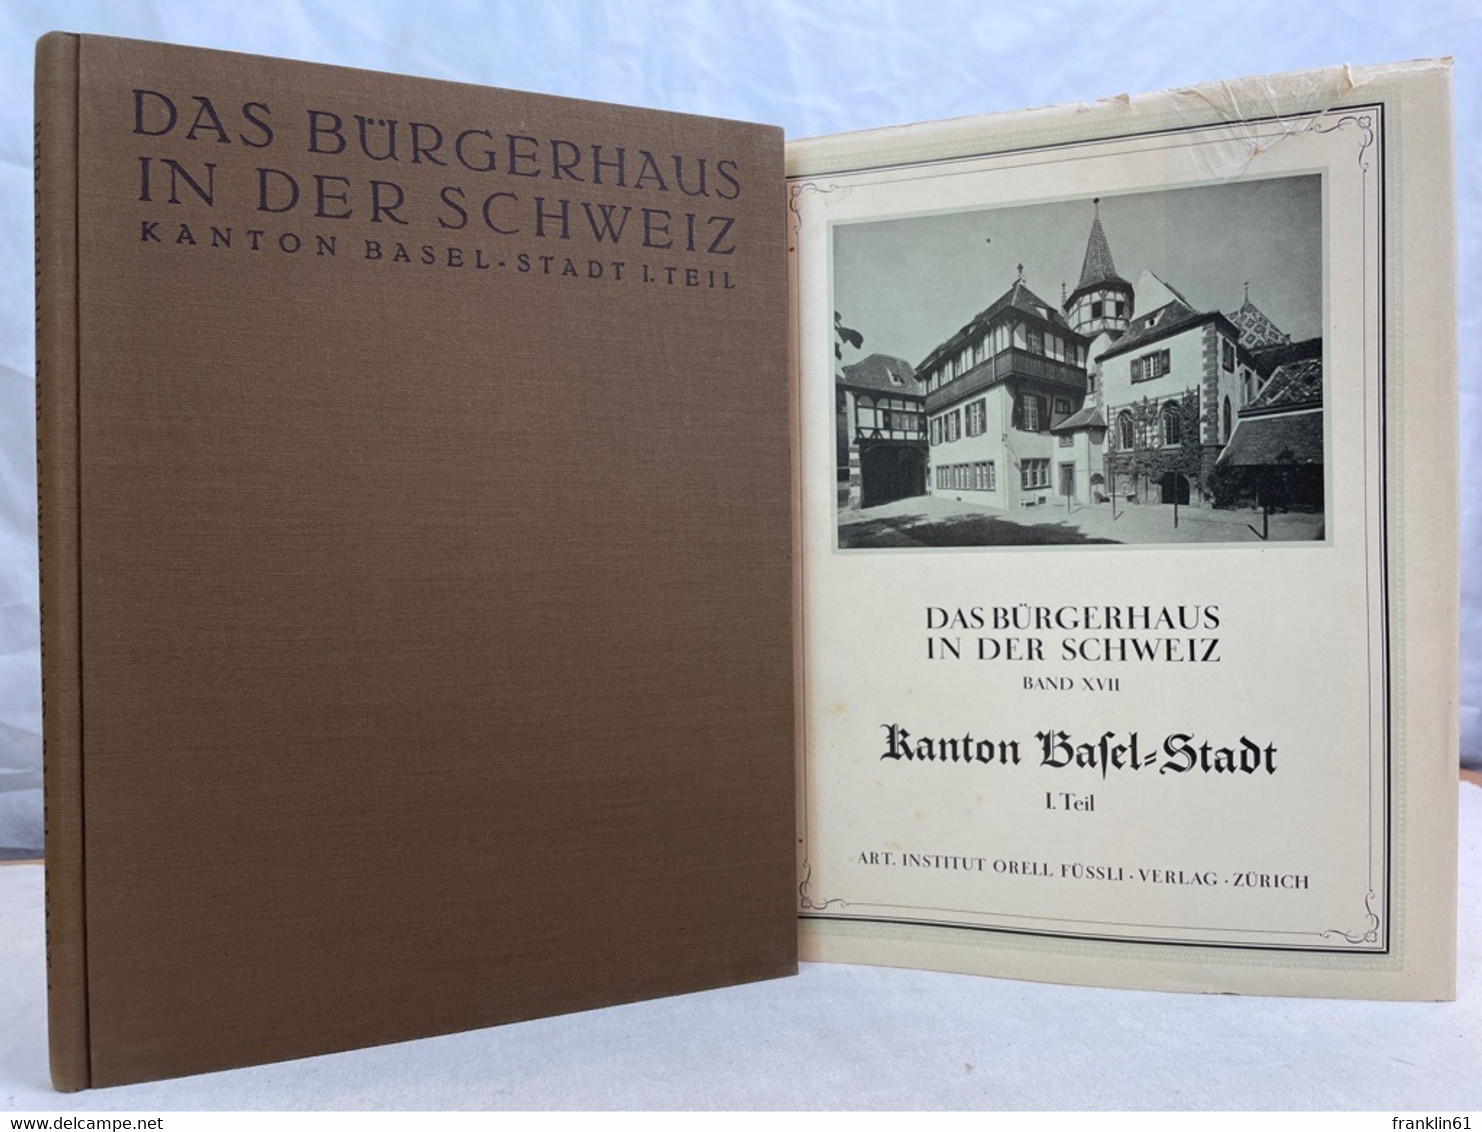 Das Bürgerhaus In Der Schweiz. La Maison Bourgeoise En Suisse. XVII. Band: Kanton Basel-Stadt 1.Teil - Architecture